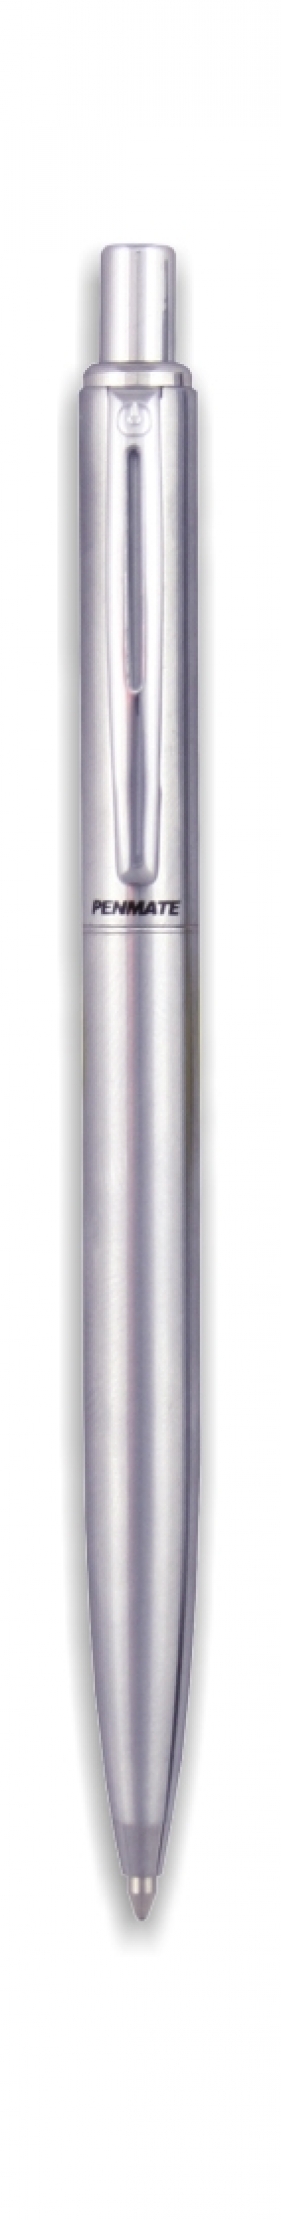 Długopis Penmate LUNA metalowy w etui.TT7434